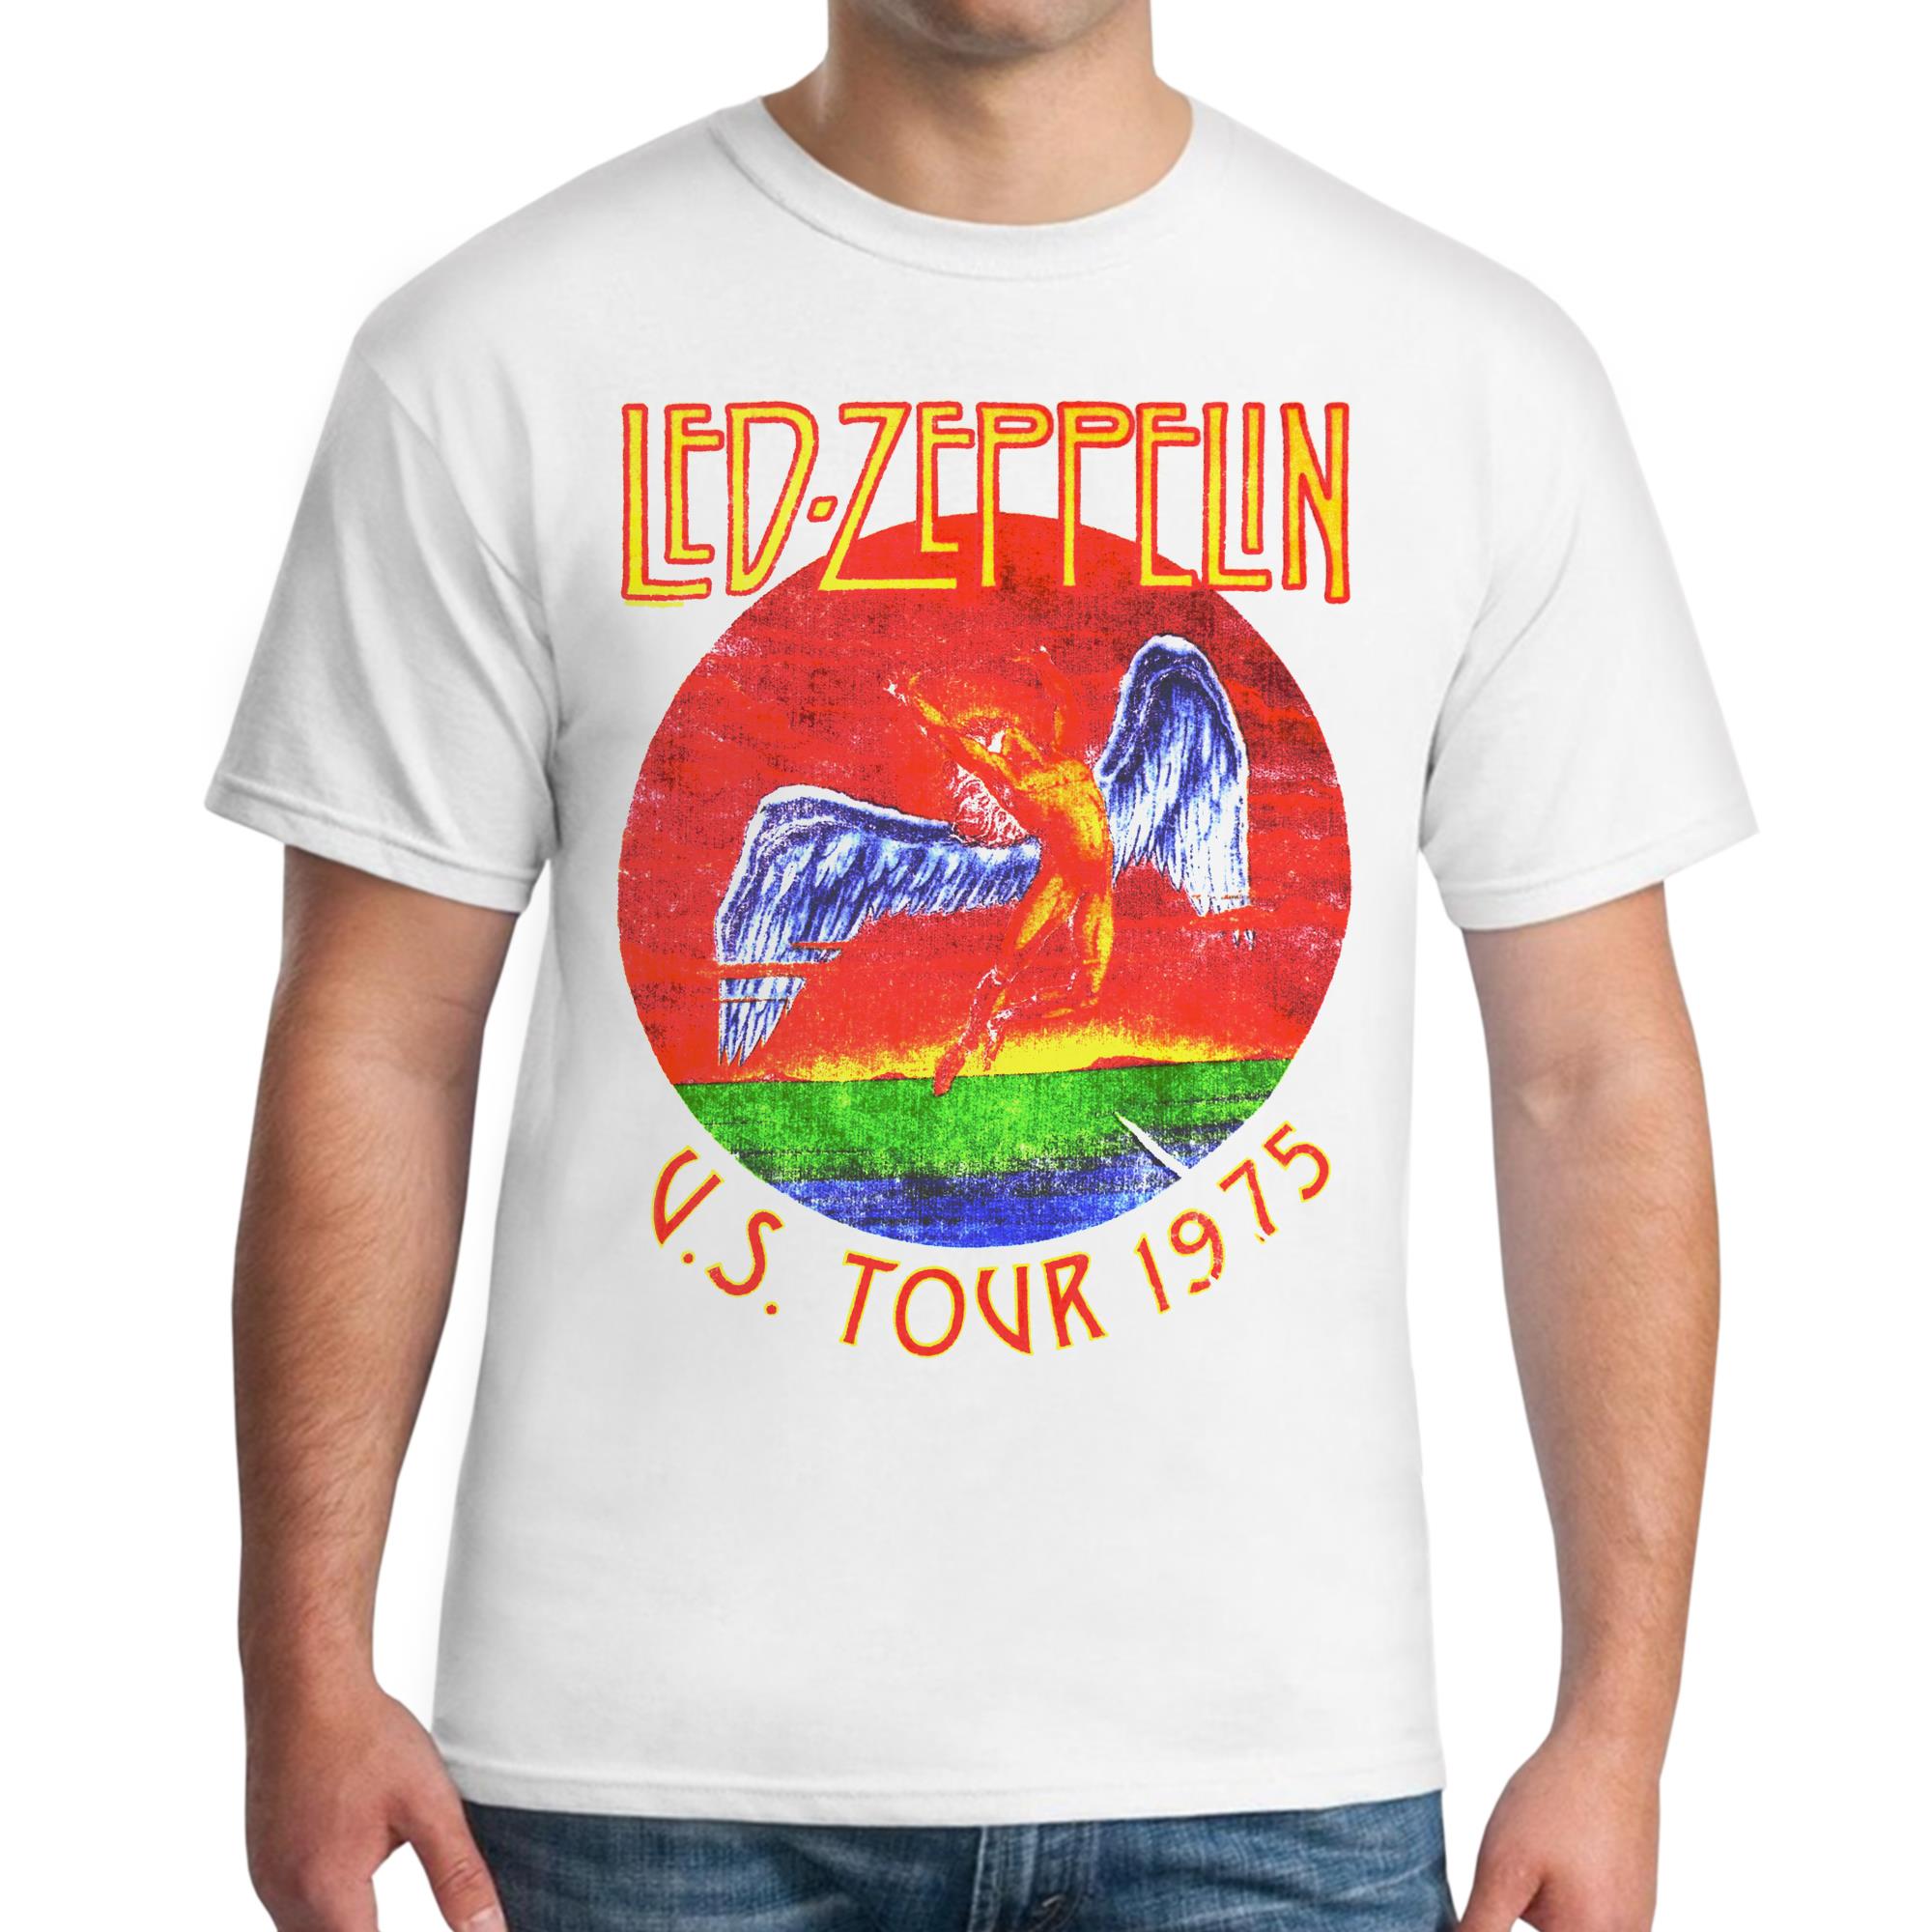 U.S. Tour 1975 T-Shirt